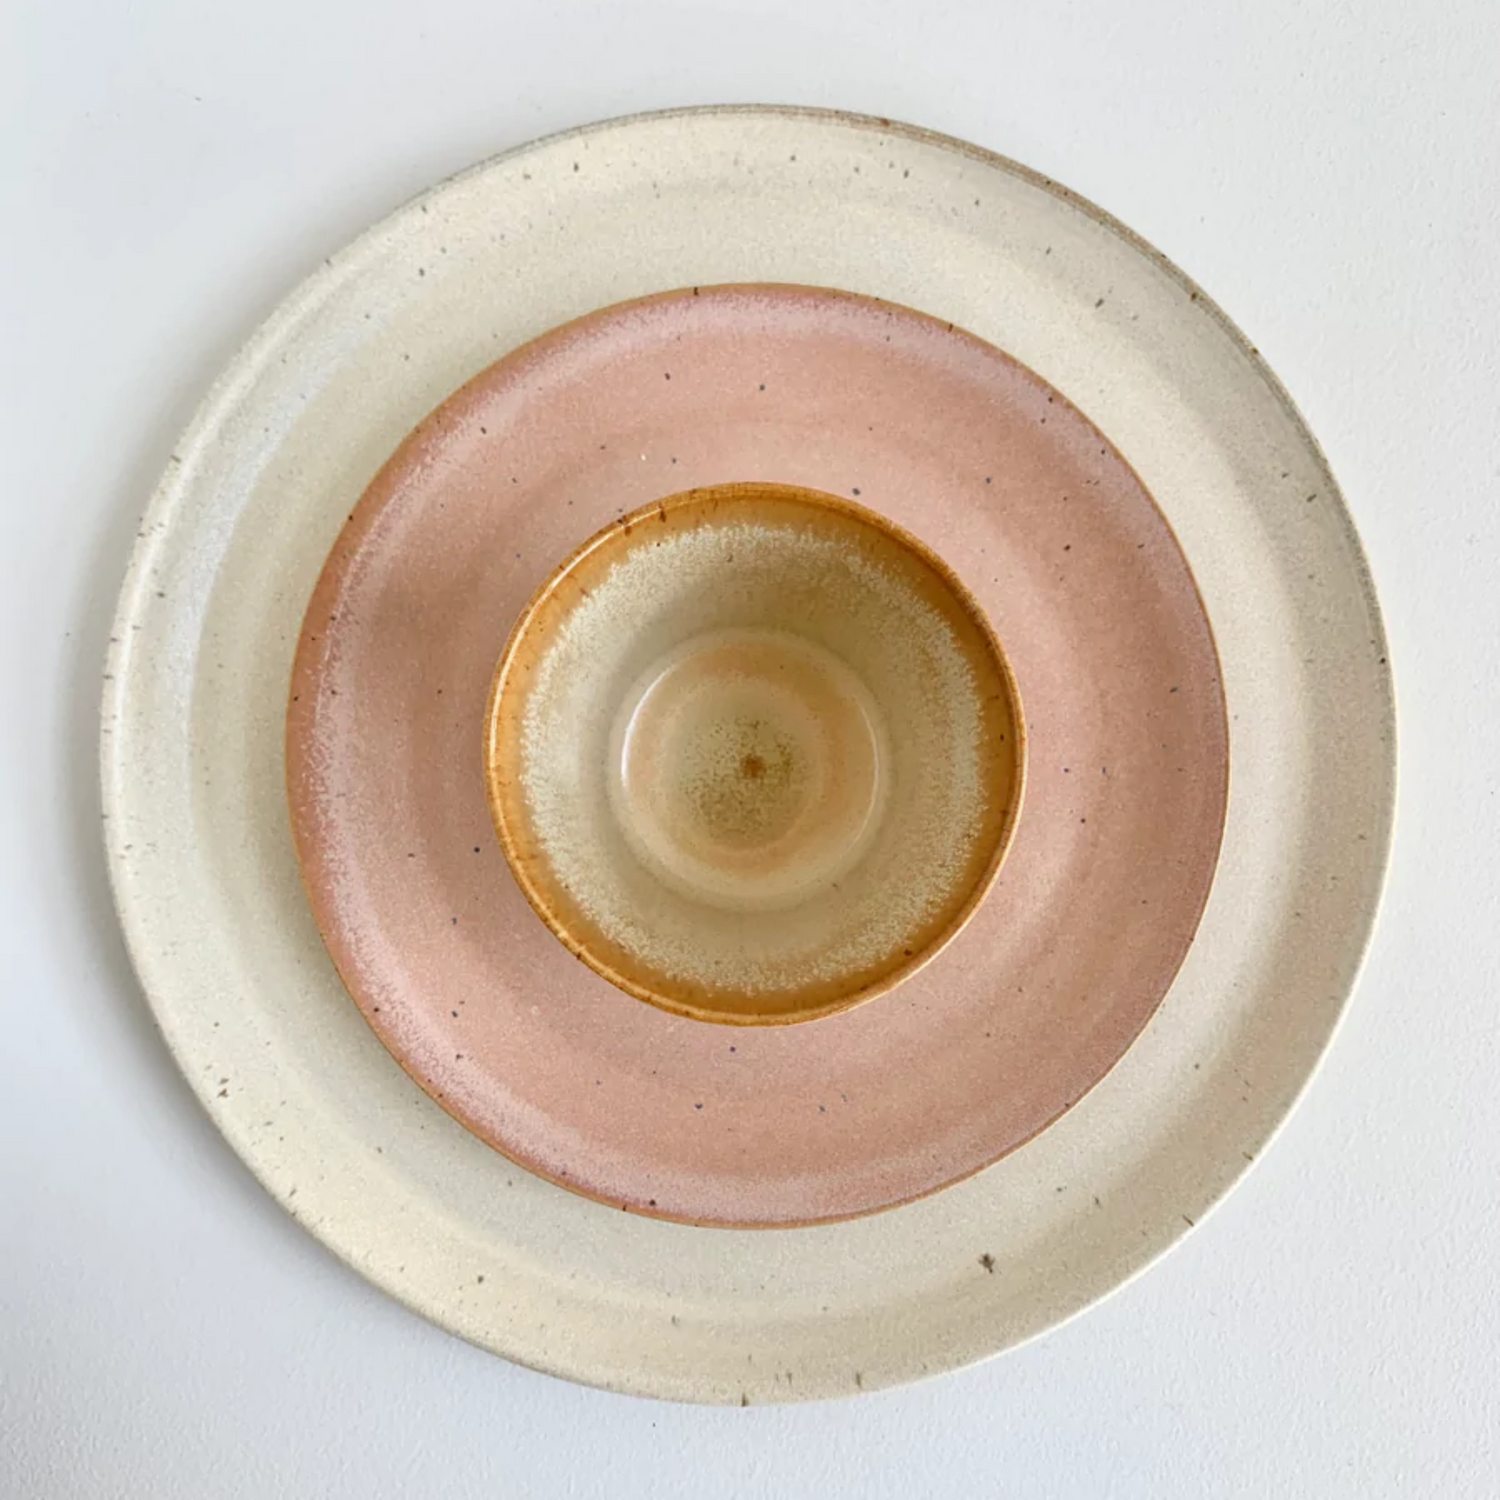 Bornholms keramik